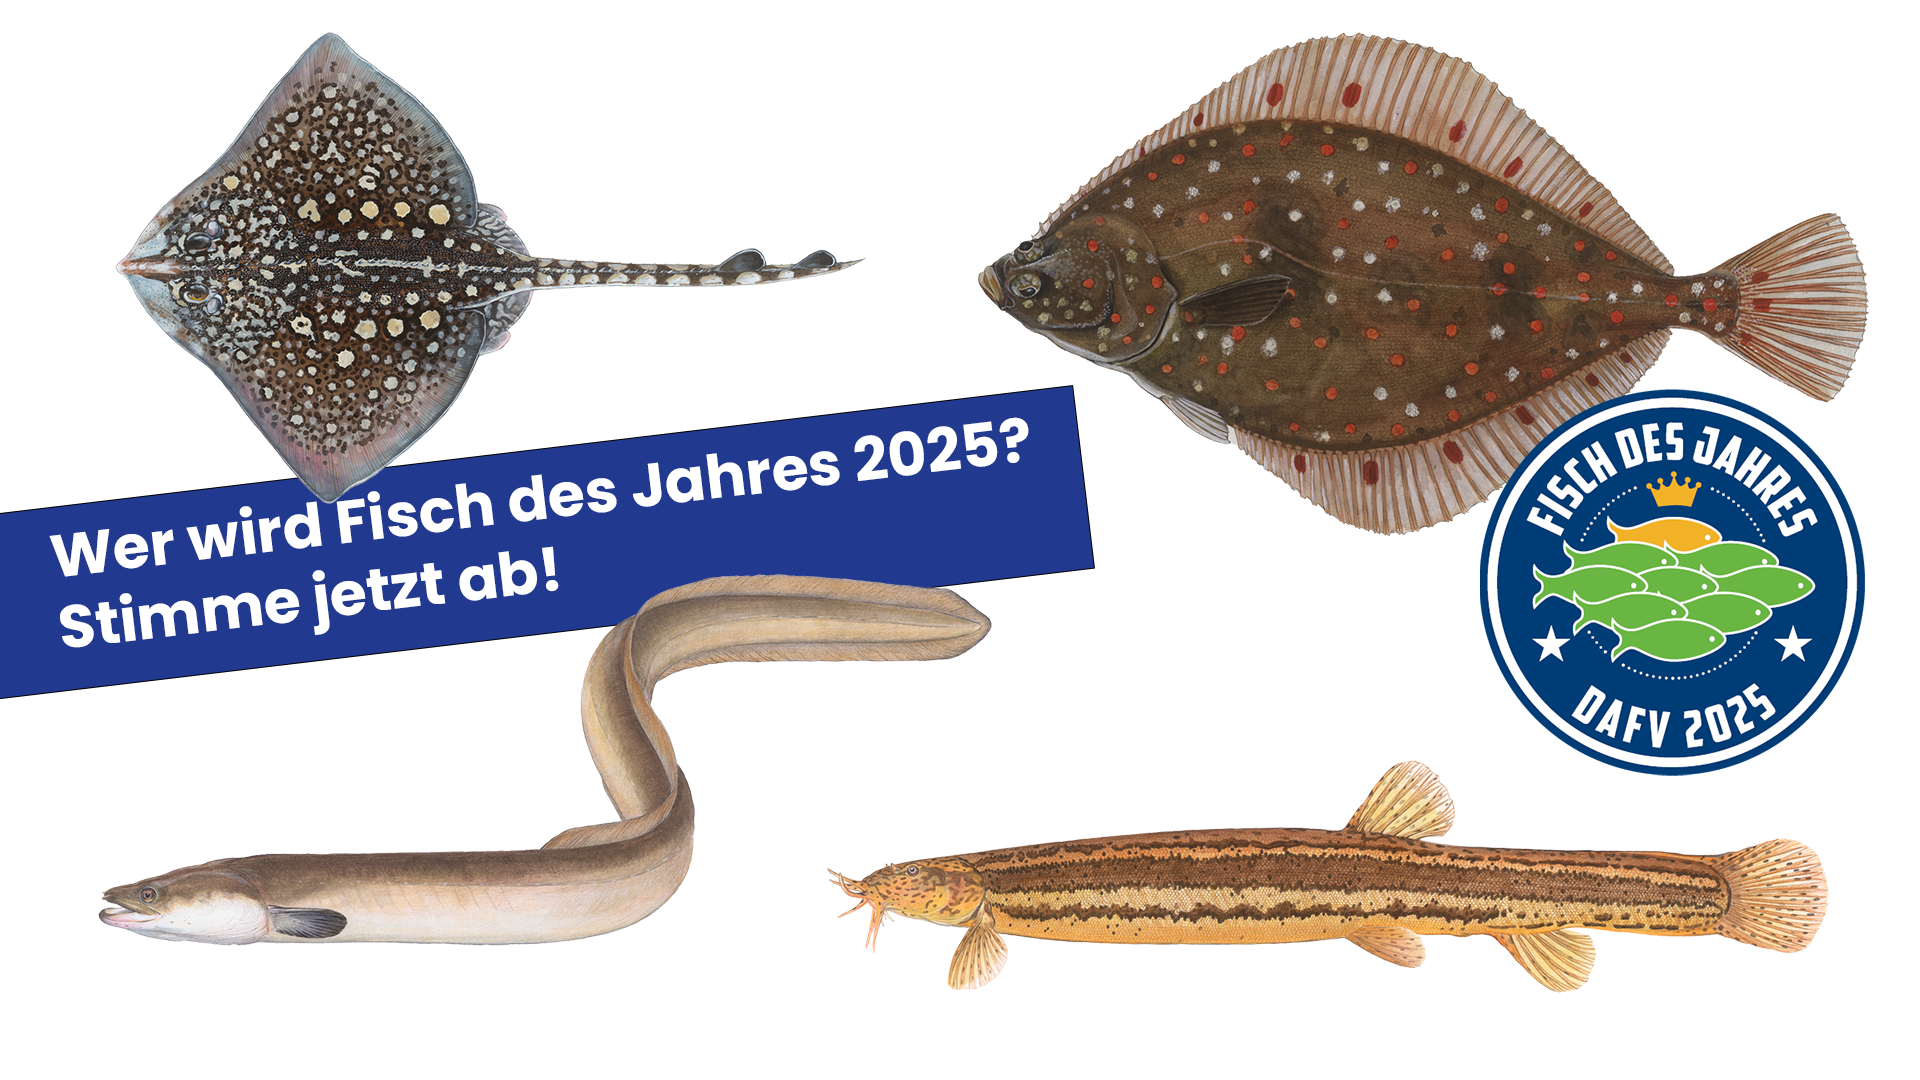 Aufruf zur Abstimmung zum Fisch des Jahres 2025